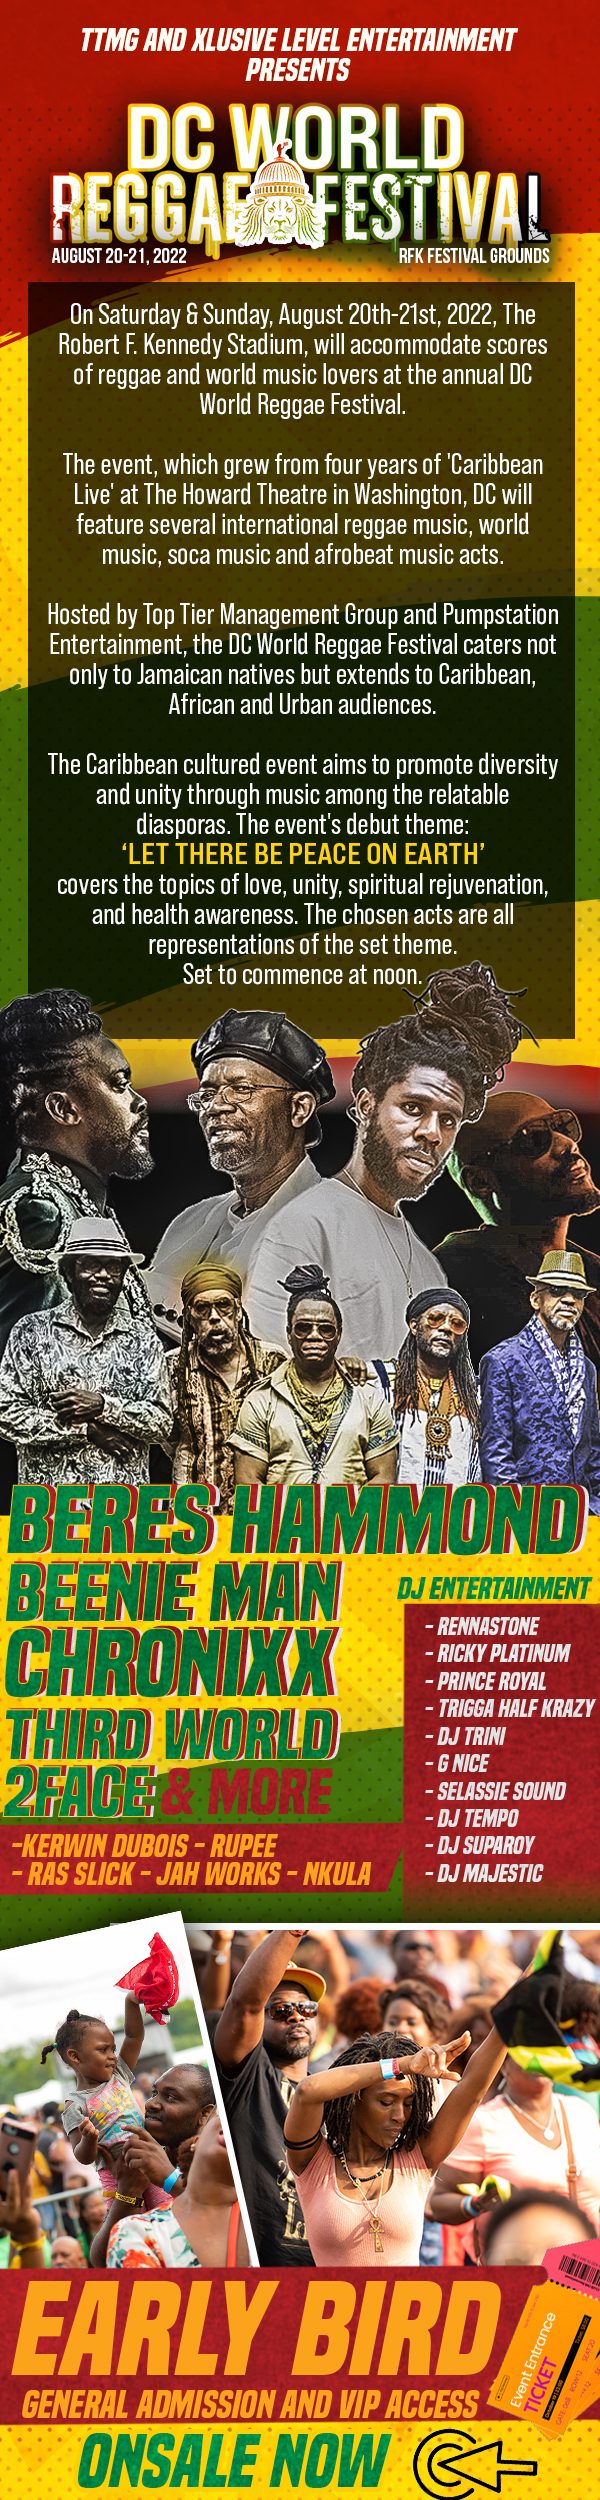 DC World Reggae Festival | Aug 20th-21st 2022 | RFK Fest